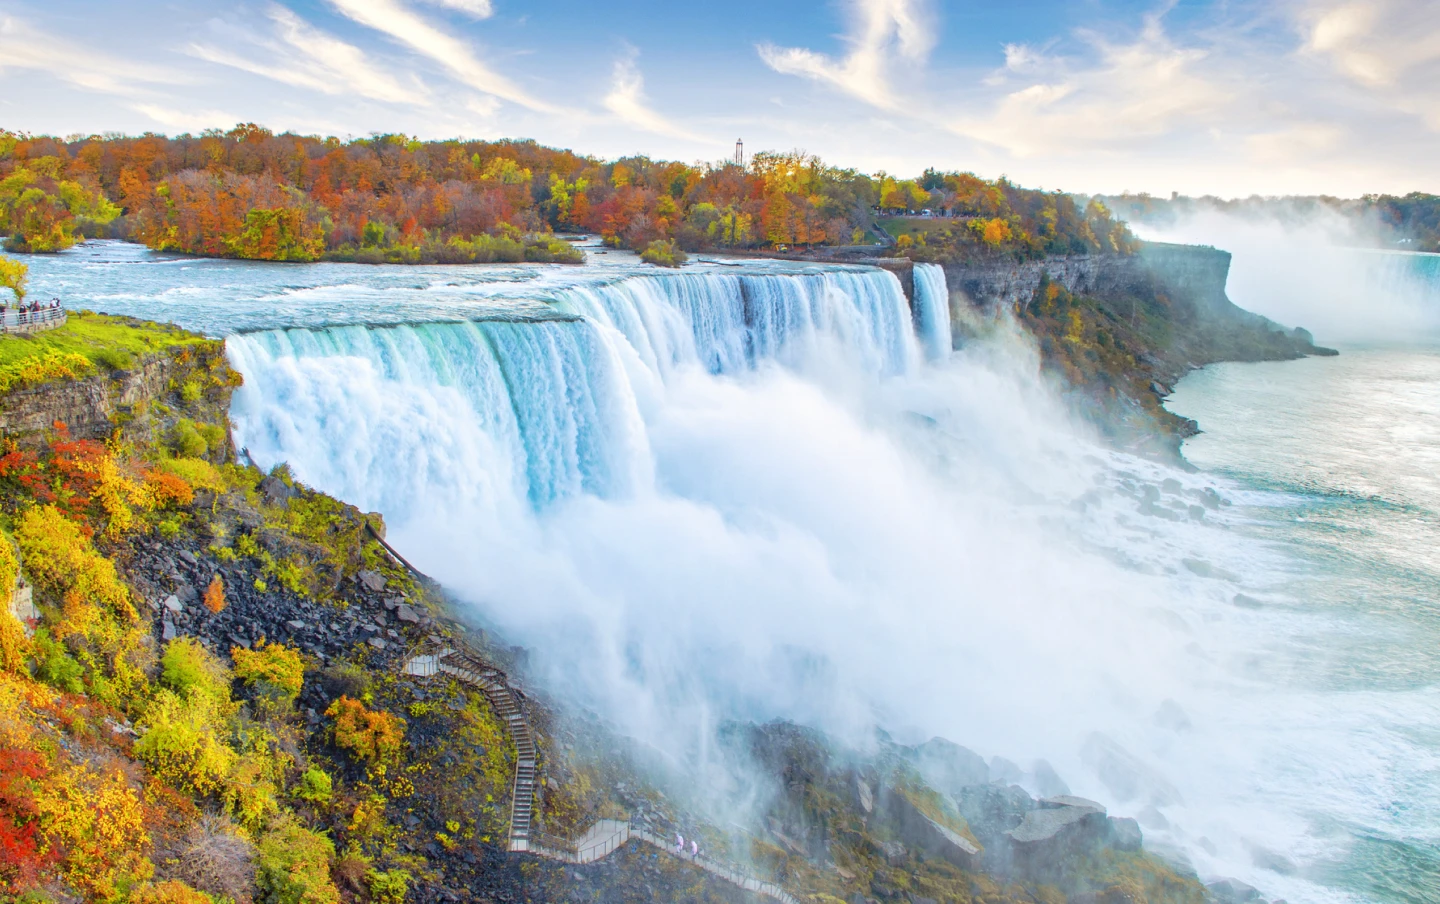 A view of fall foliage surrounding Niagara Falls